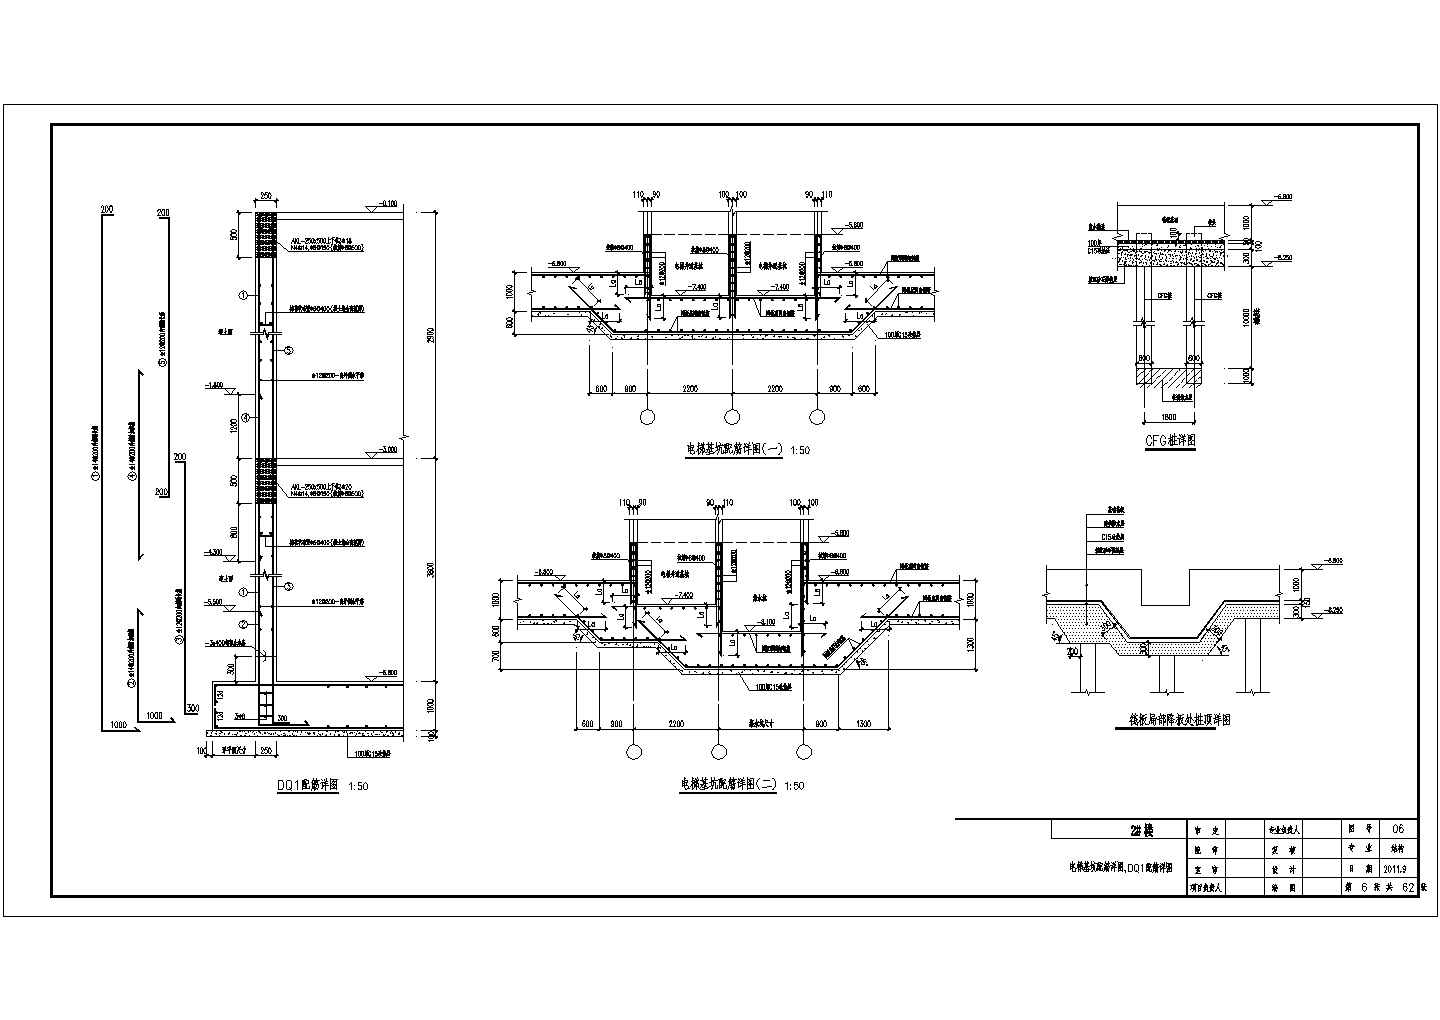 电梯基坑配筋详图、DQ1配筋节点构造详图